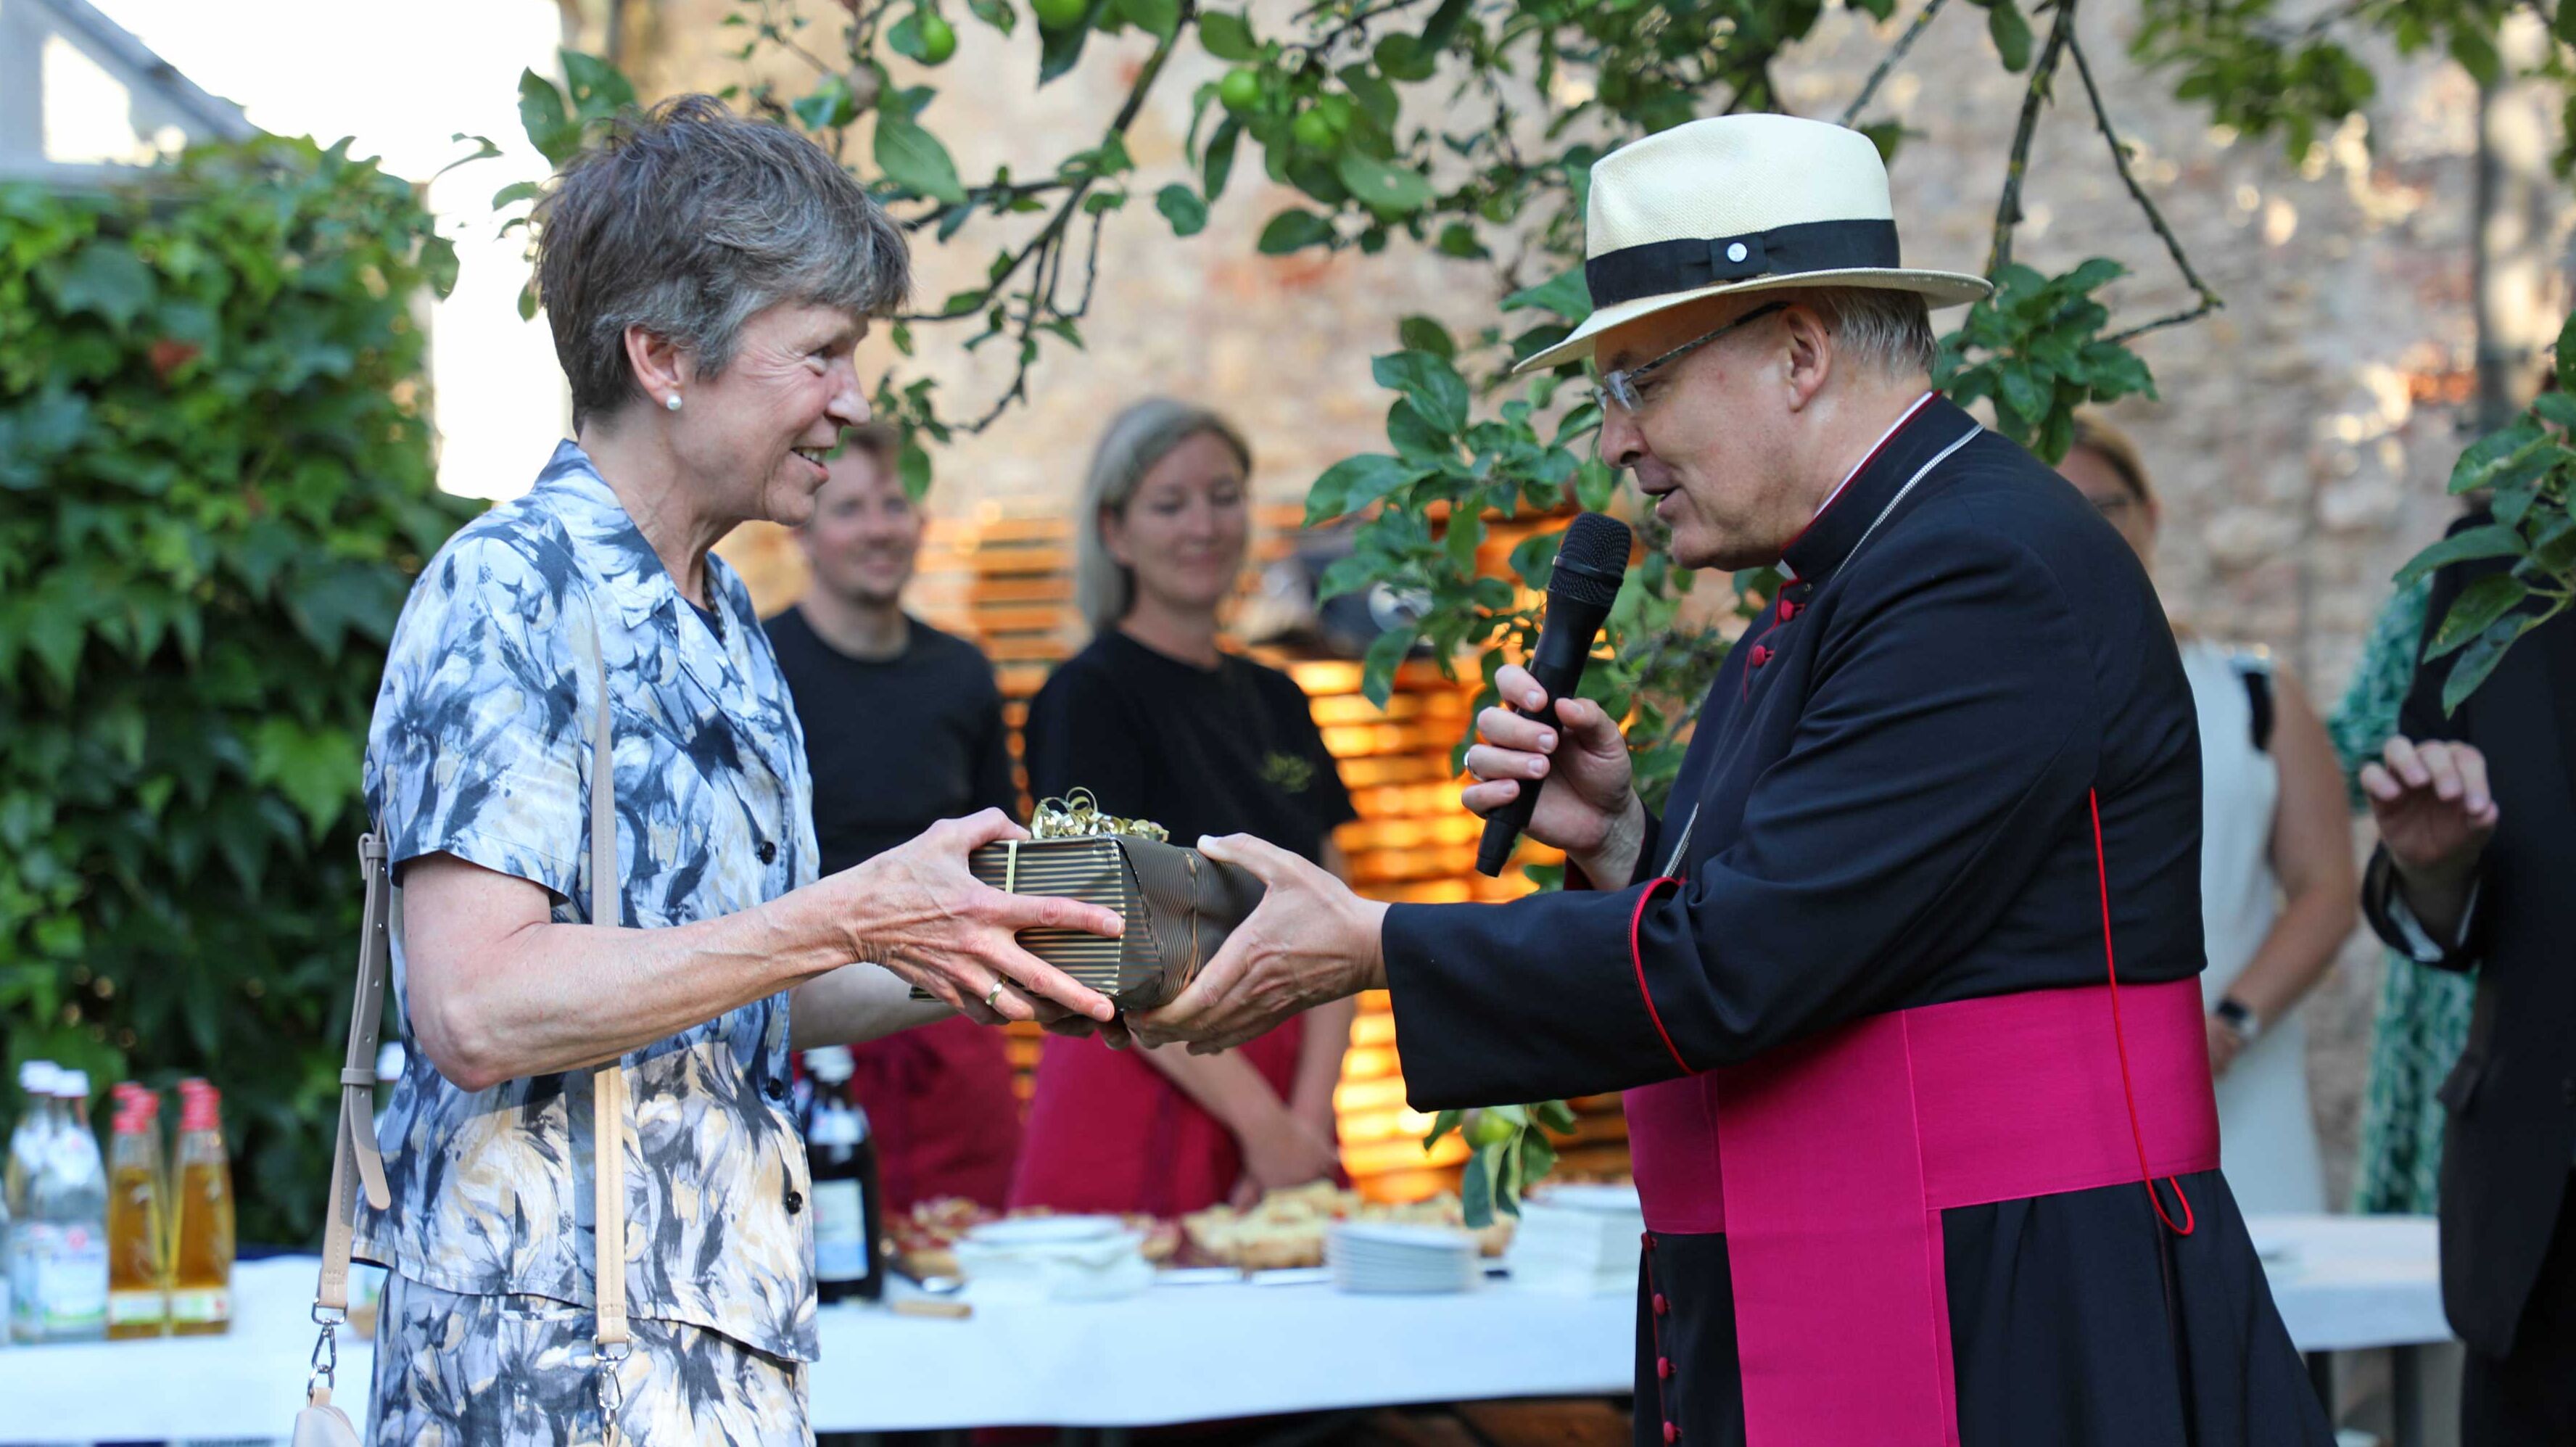 Bischof Rudolf übergibt Ordinariatsrätin María Luisa Öfele die gesammelten Schriften von Josef Ratzinger als Abschiedsgeschenk in den wohlverdienten Ruhestand